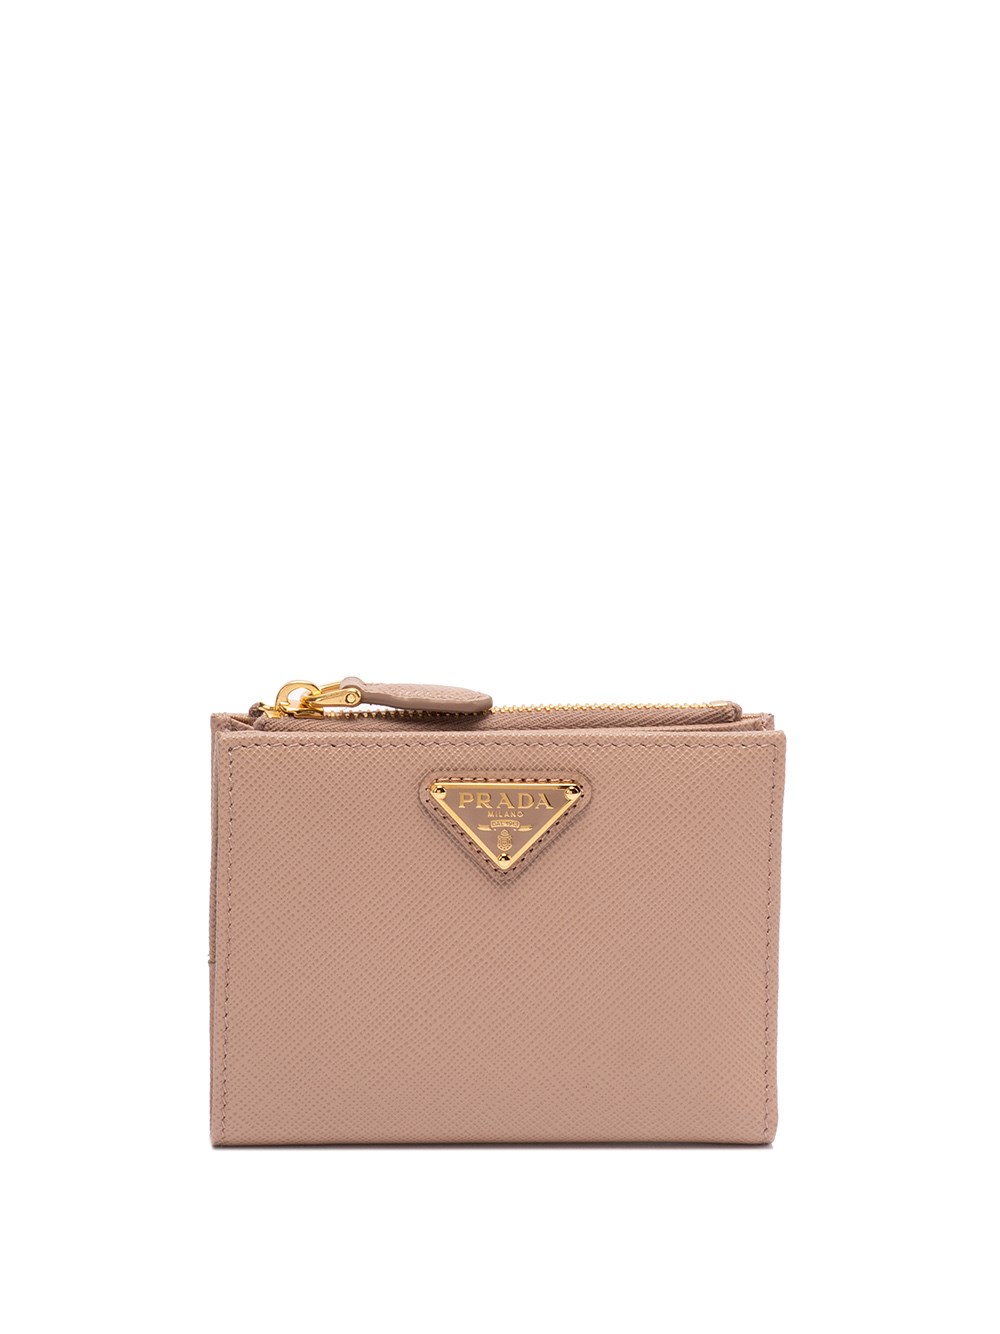 Prada Small Saffiano Leather Wallet In Rosa